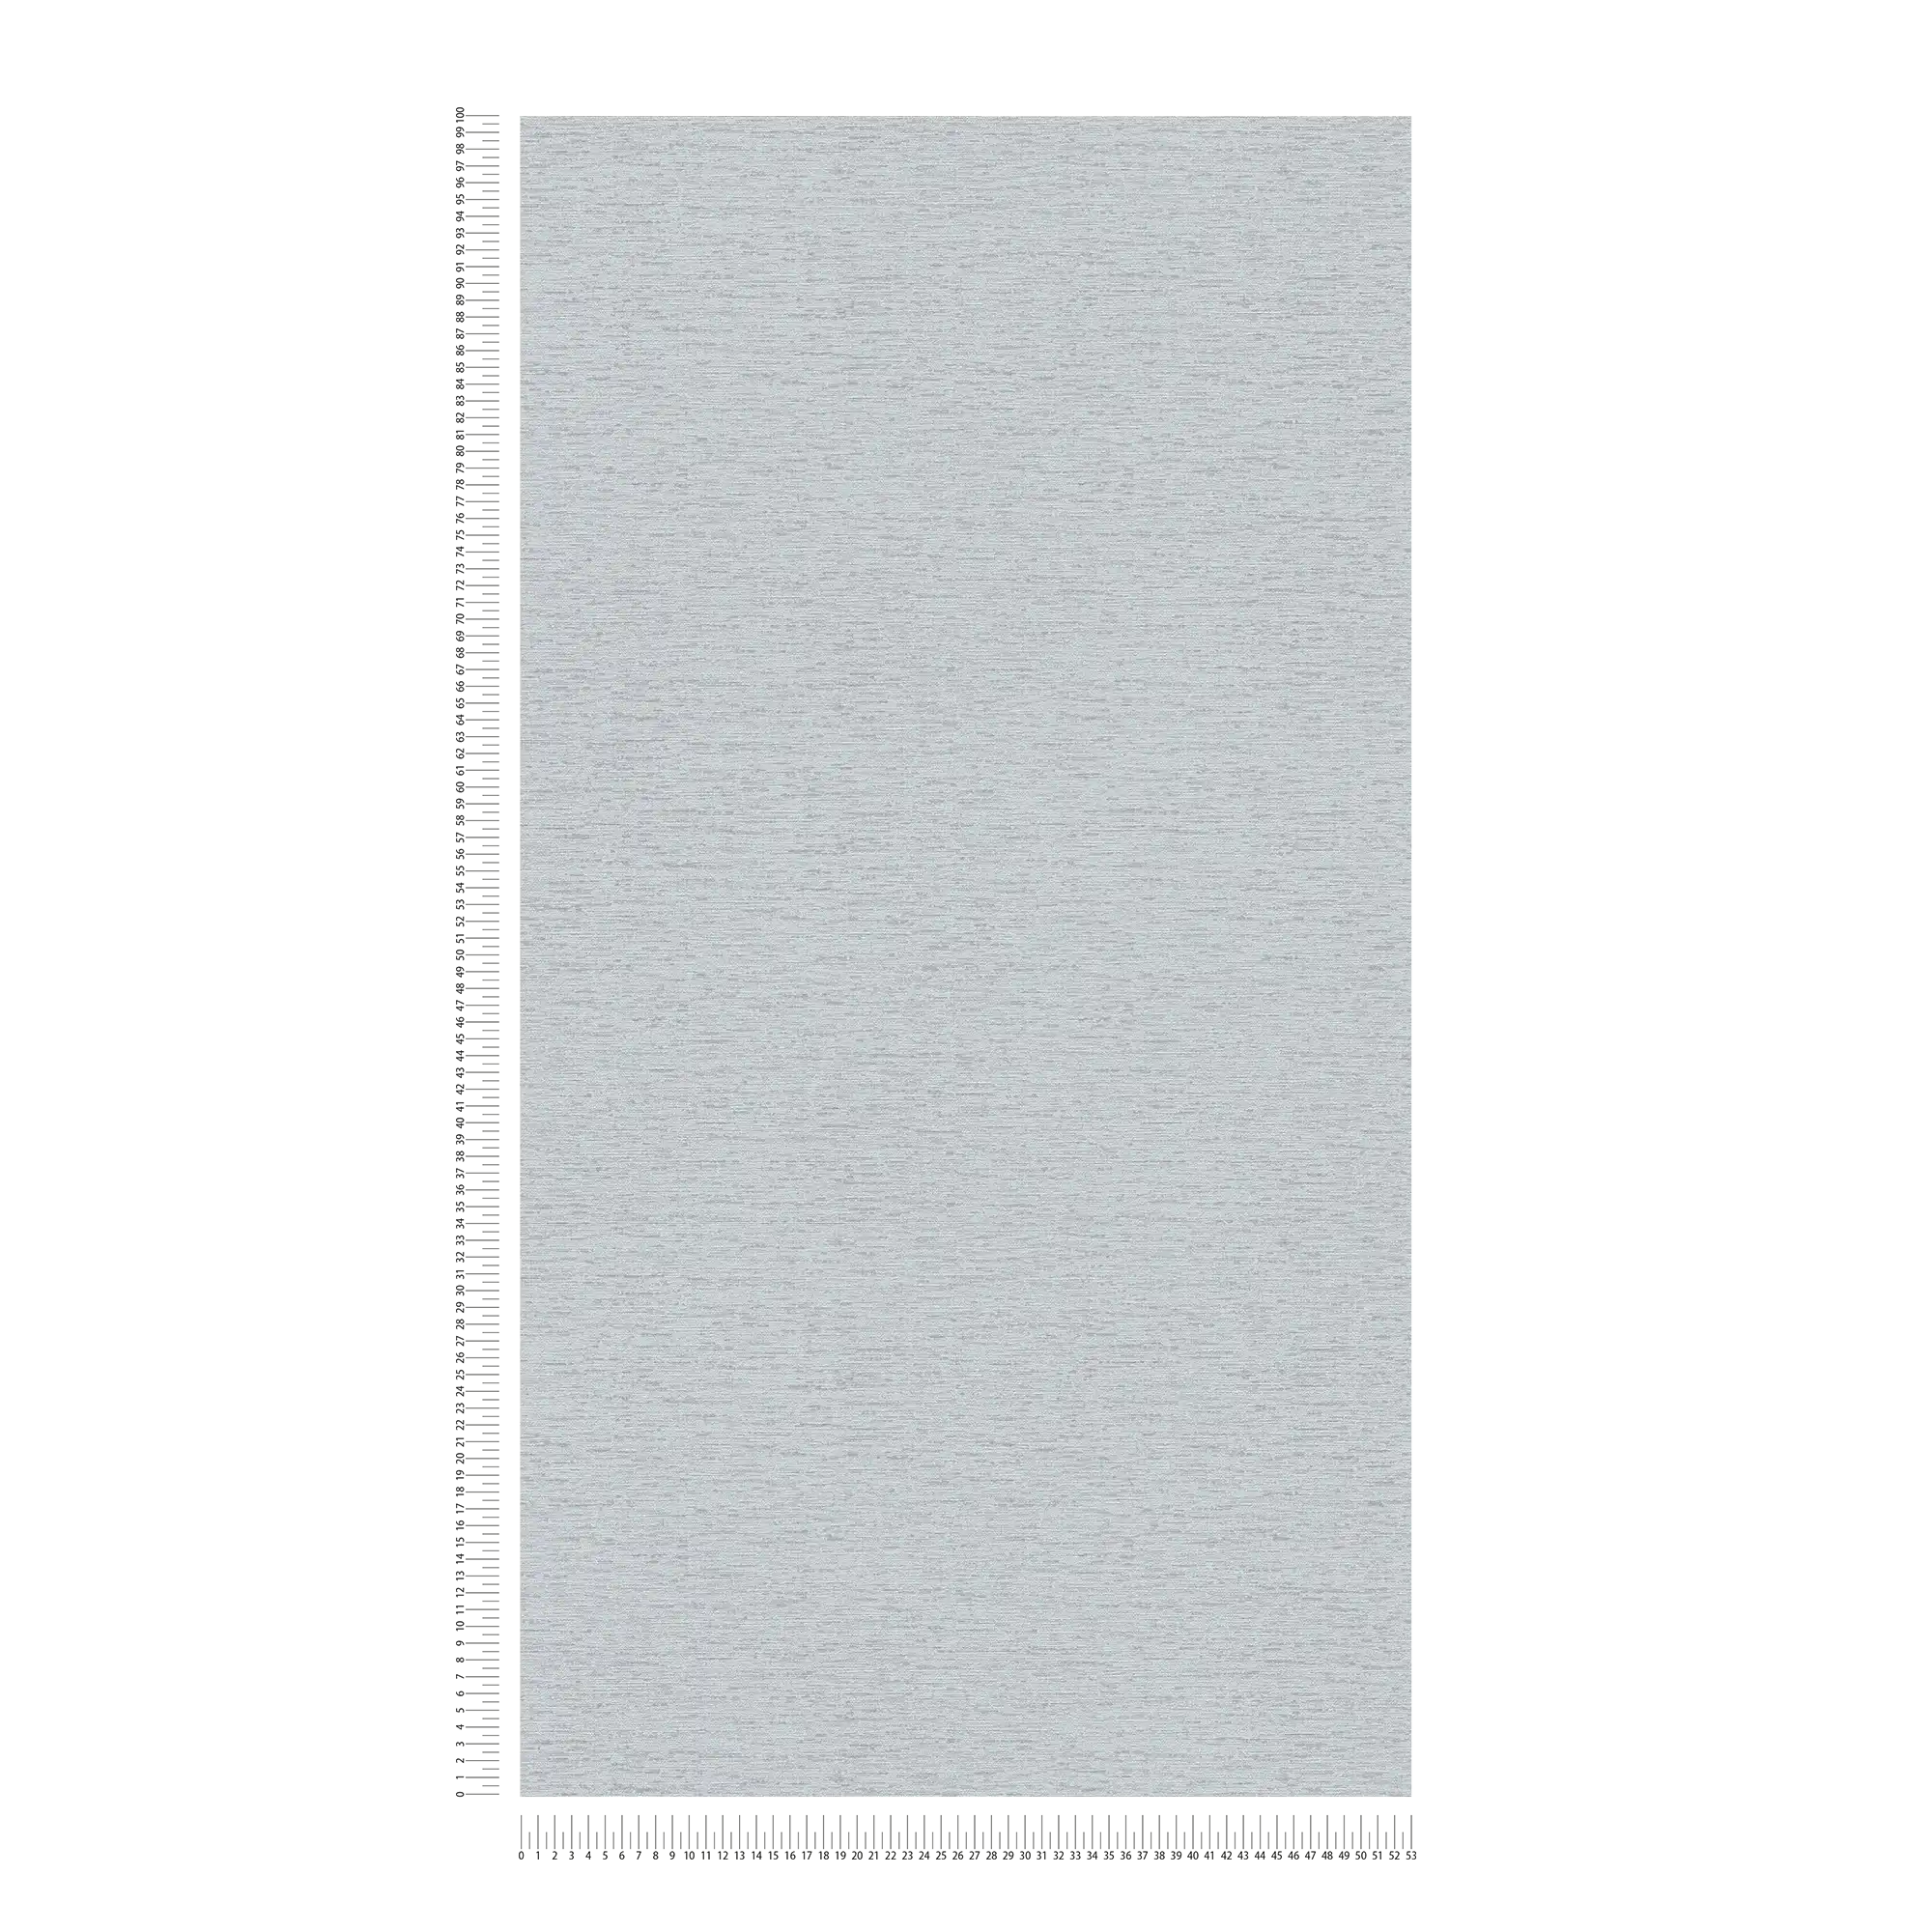             Effen vliesbehang in textiellook met lichte structuur, mat - grijs, lichtgrijs
        